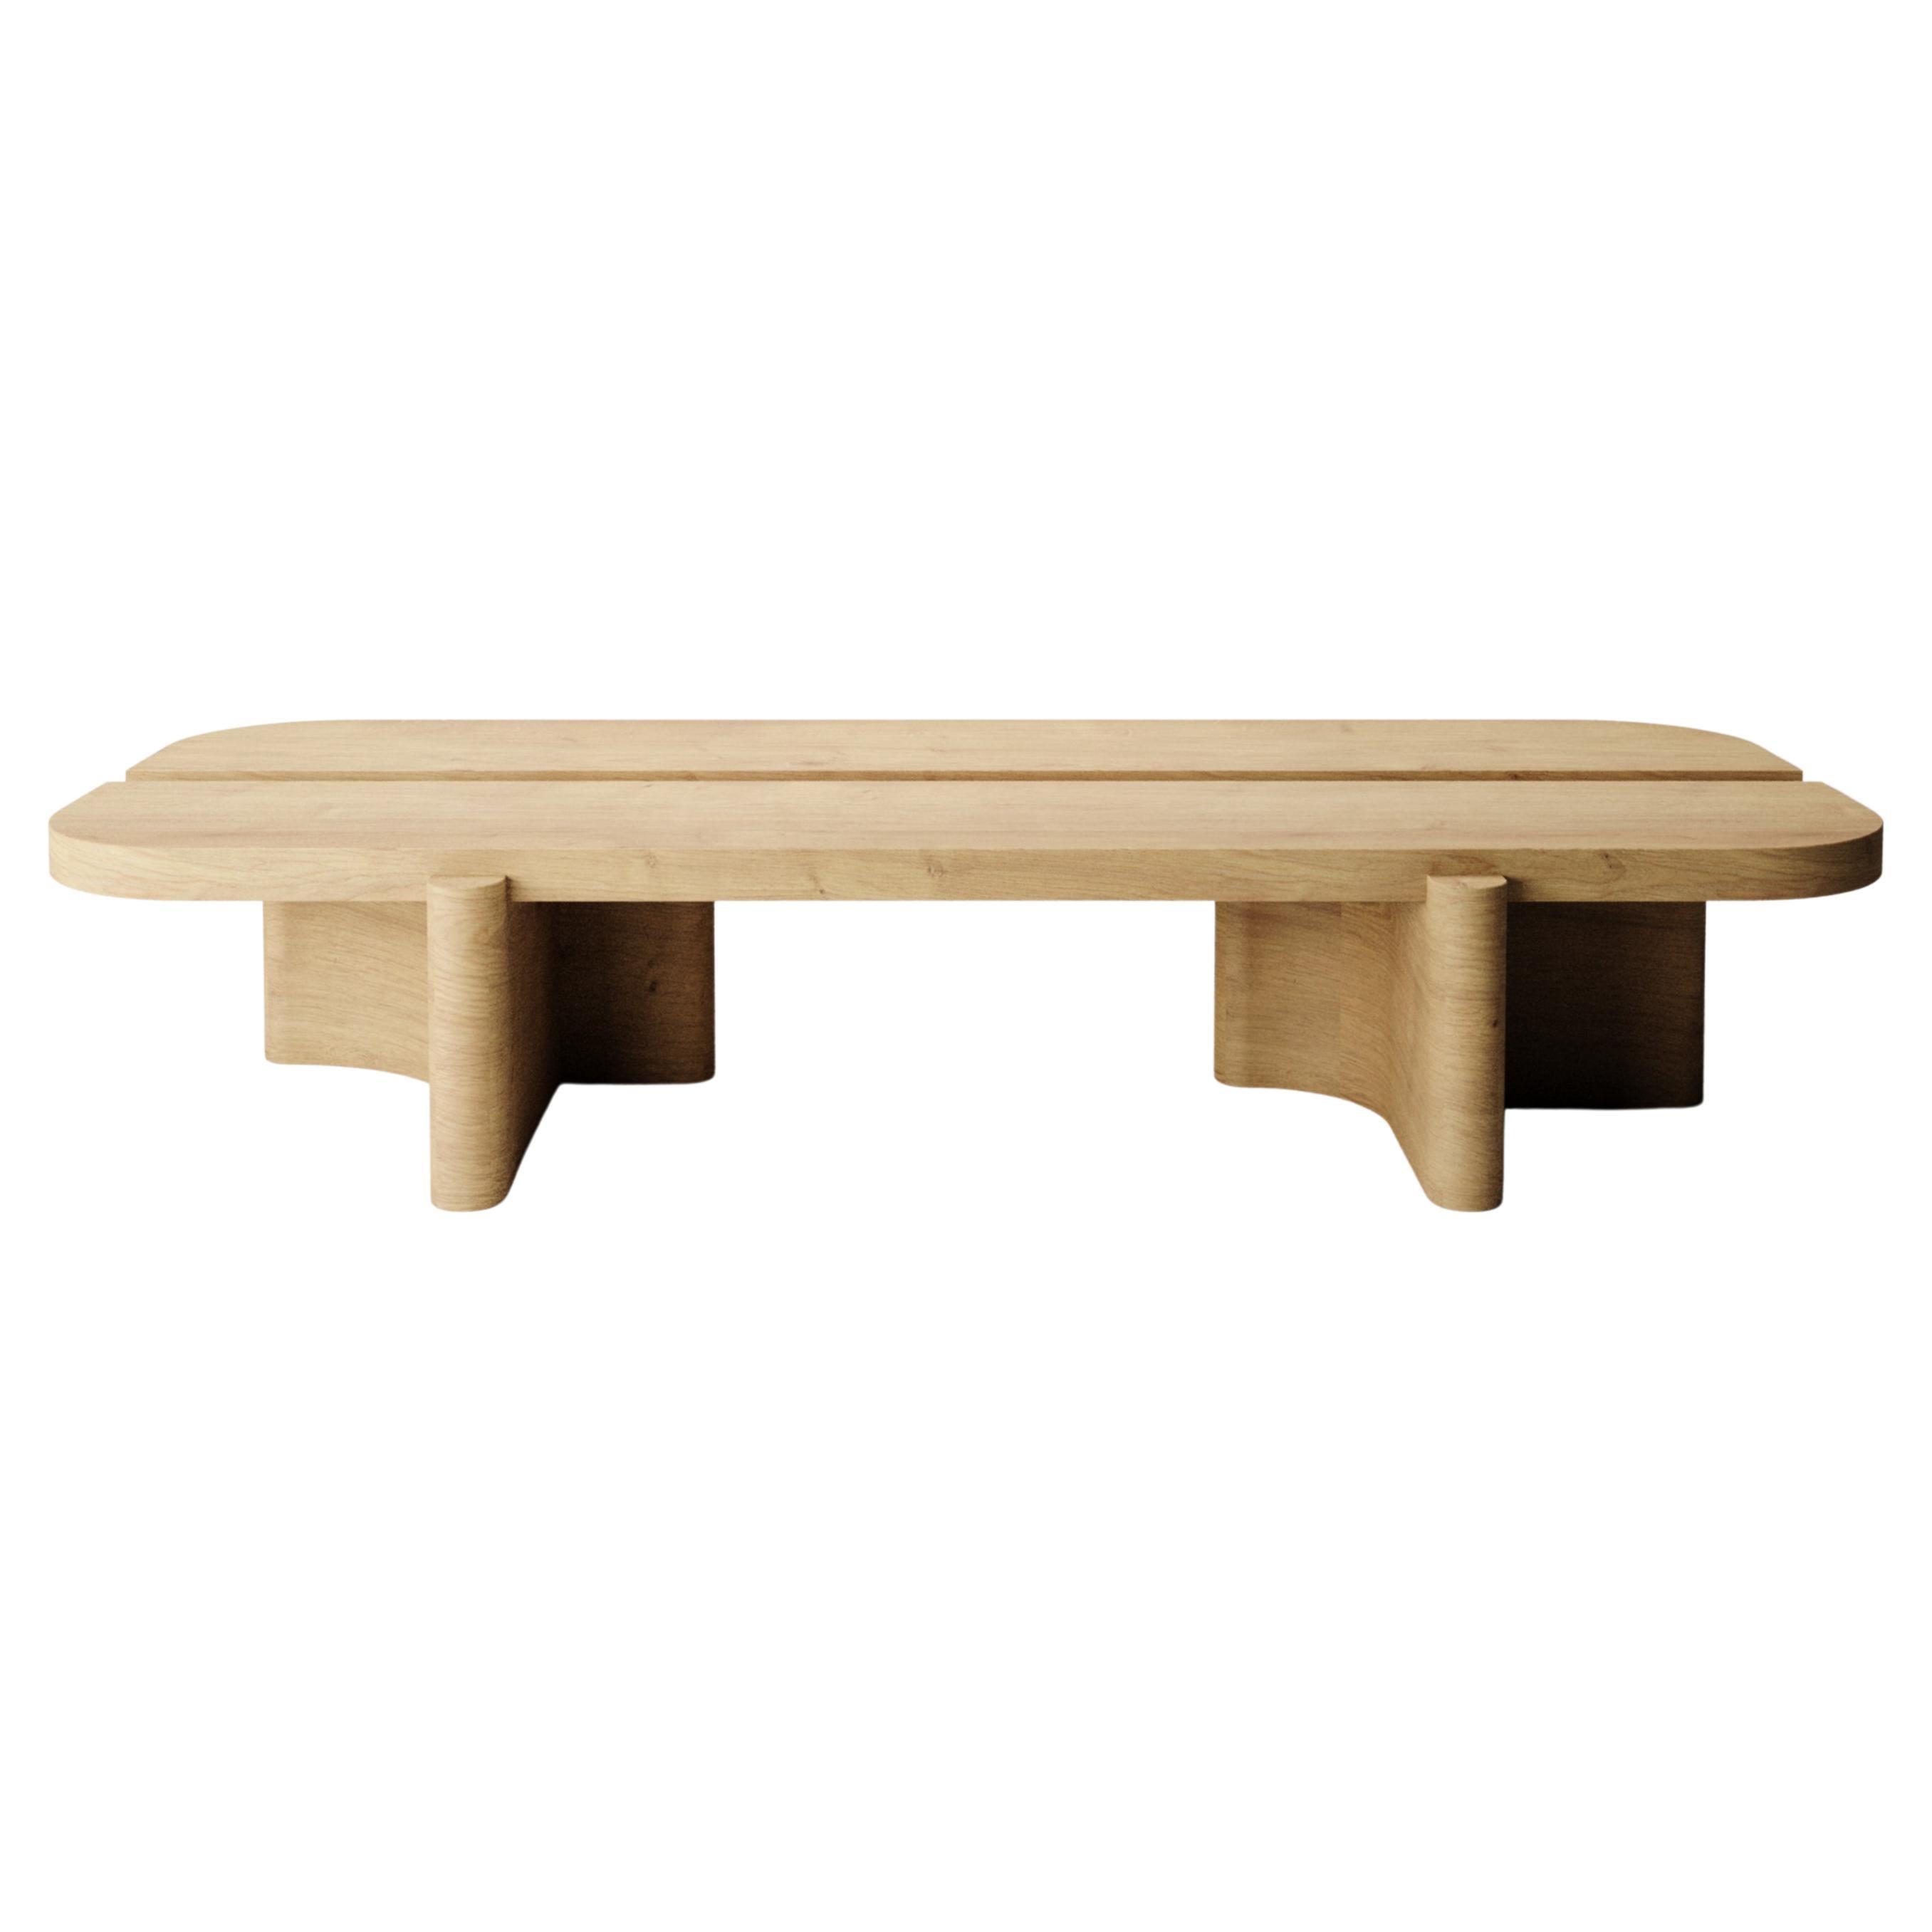 Collector -Designed by Studio Rigiera Center Table Natural Oak